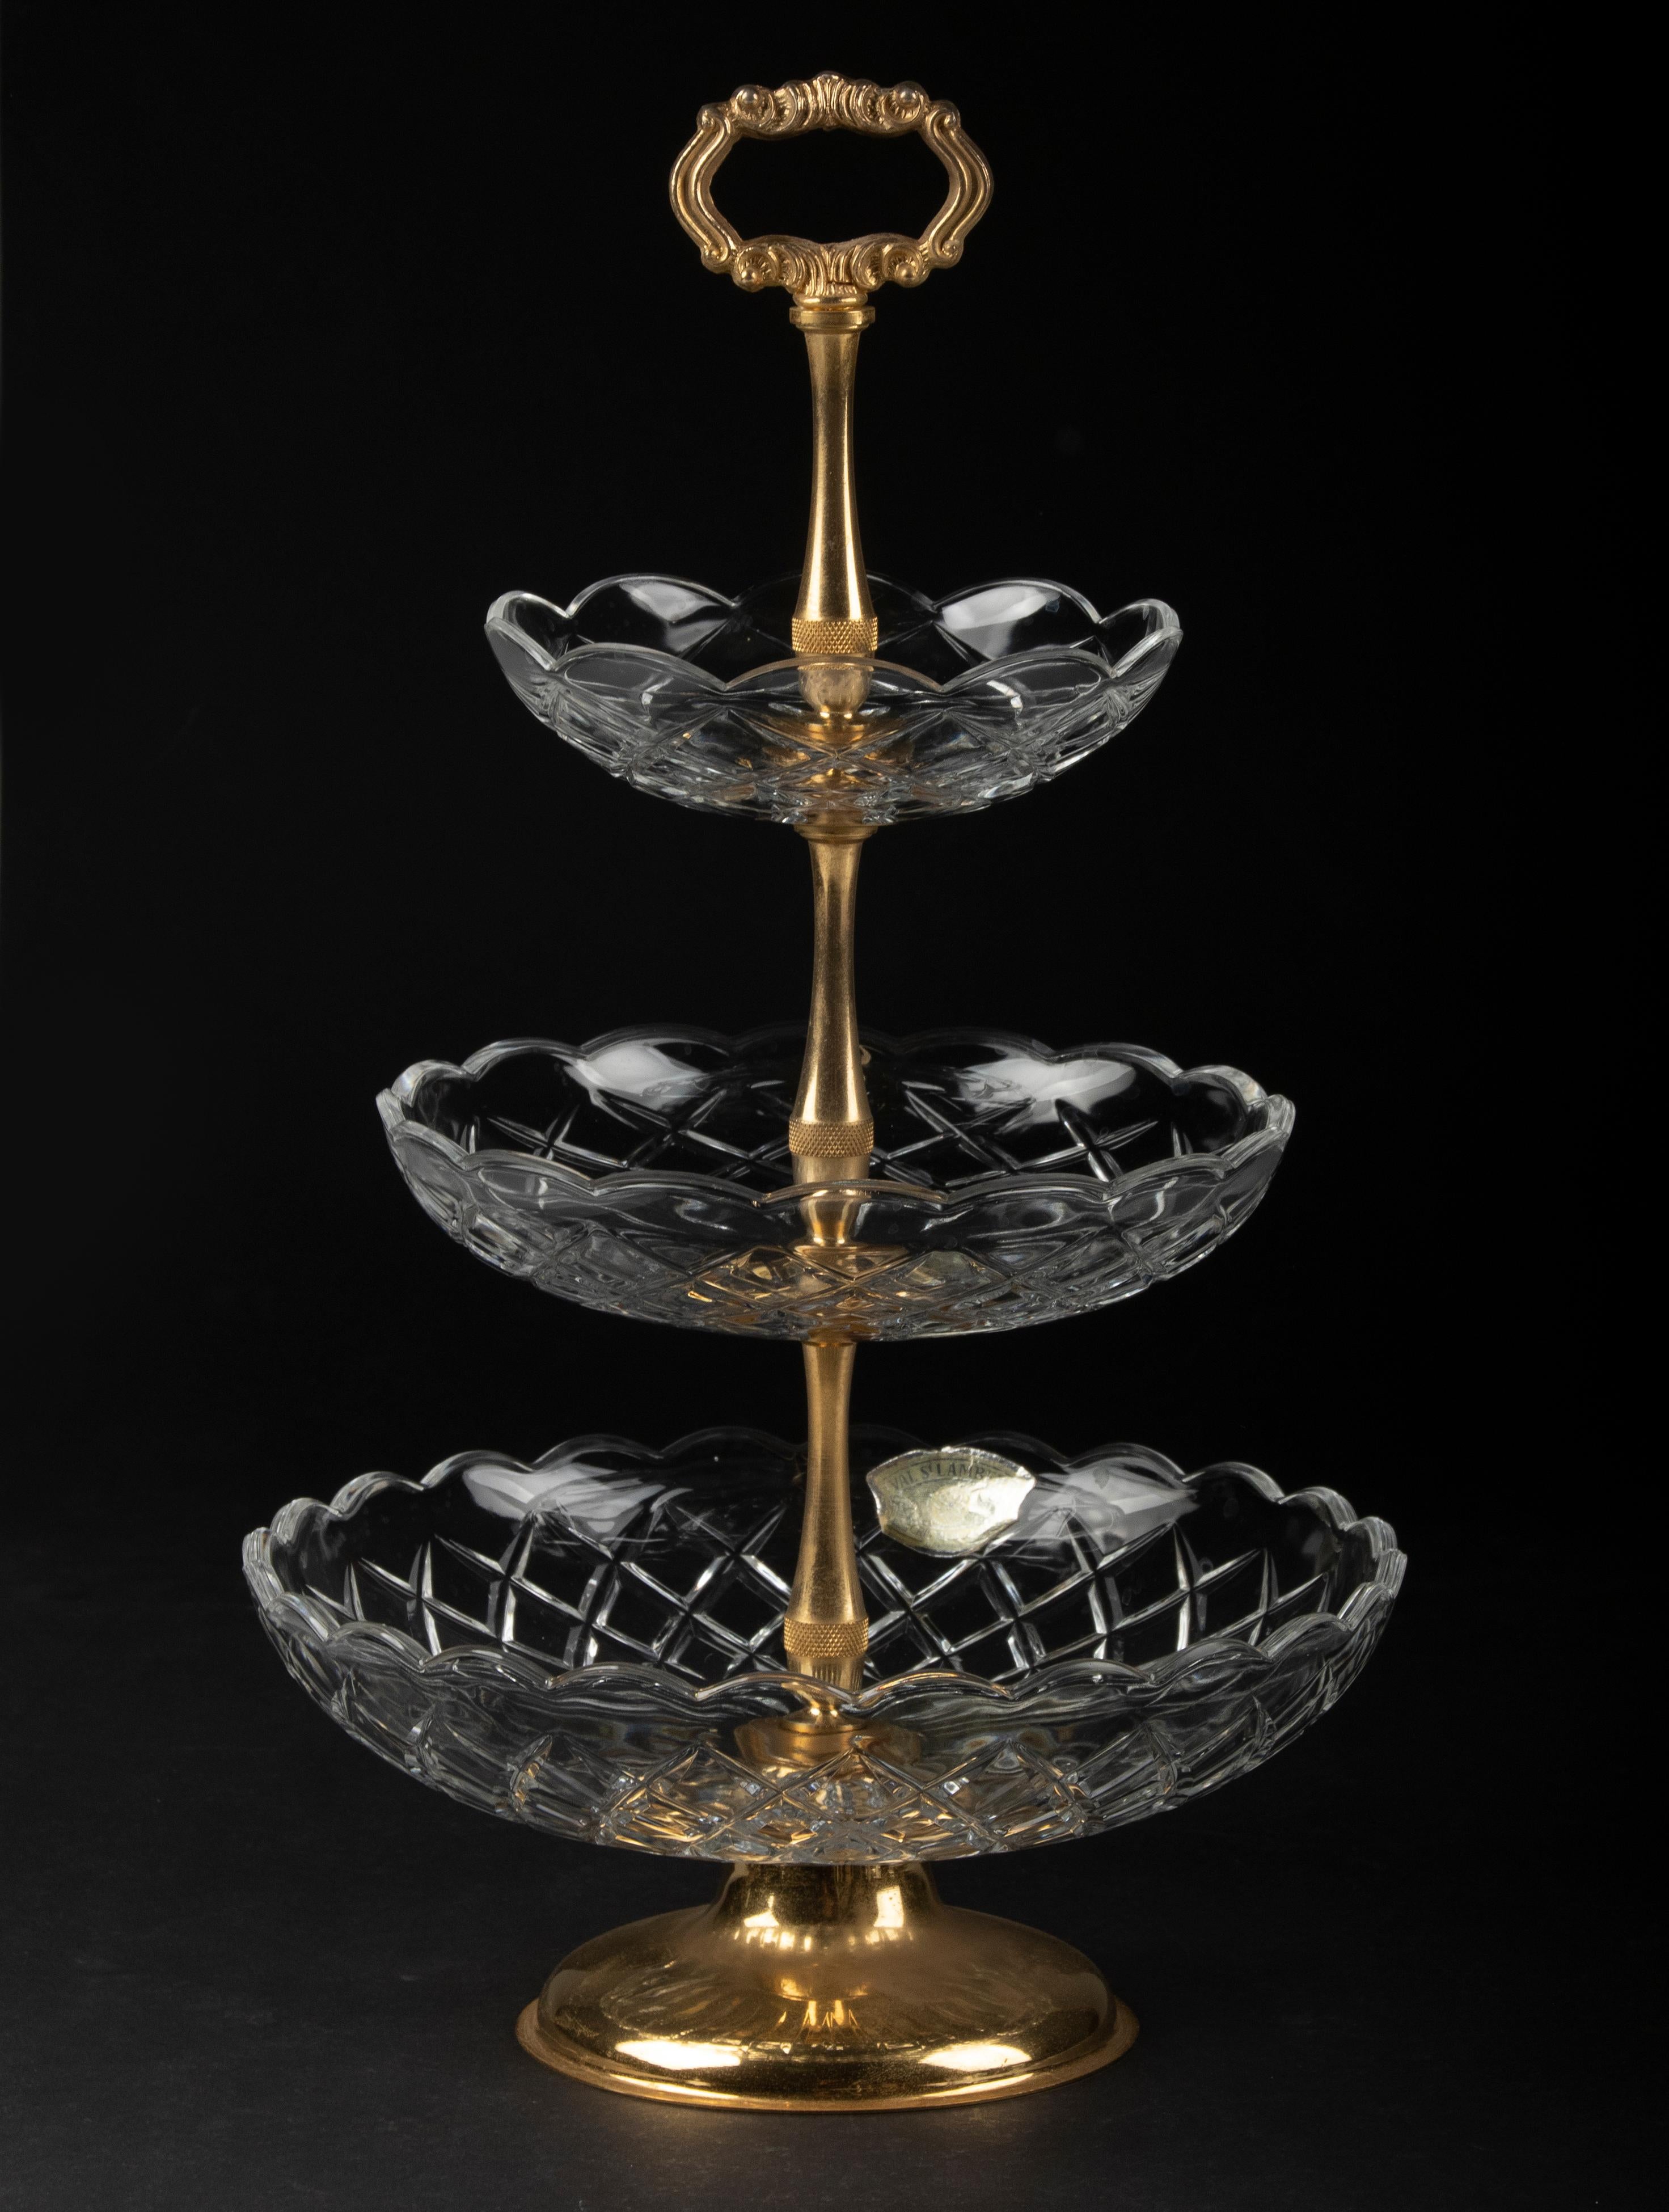 Magnifique support en cristal à 3 couches du designer belge Val Saint Lambert. Le cadre est en métal plaqué or. Les bols en cristal présentent de belles coupes avec des arcs et des bords festonnés. Le support date d'environ 1960. En très bon état.